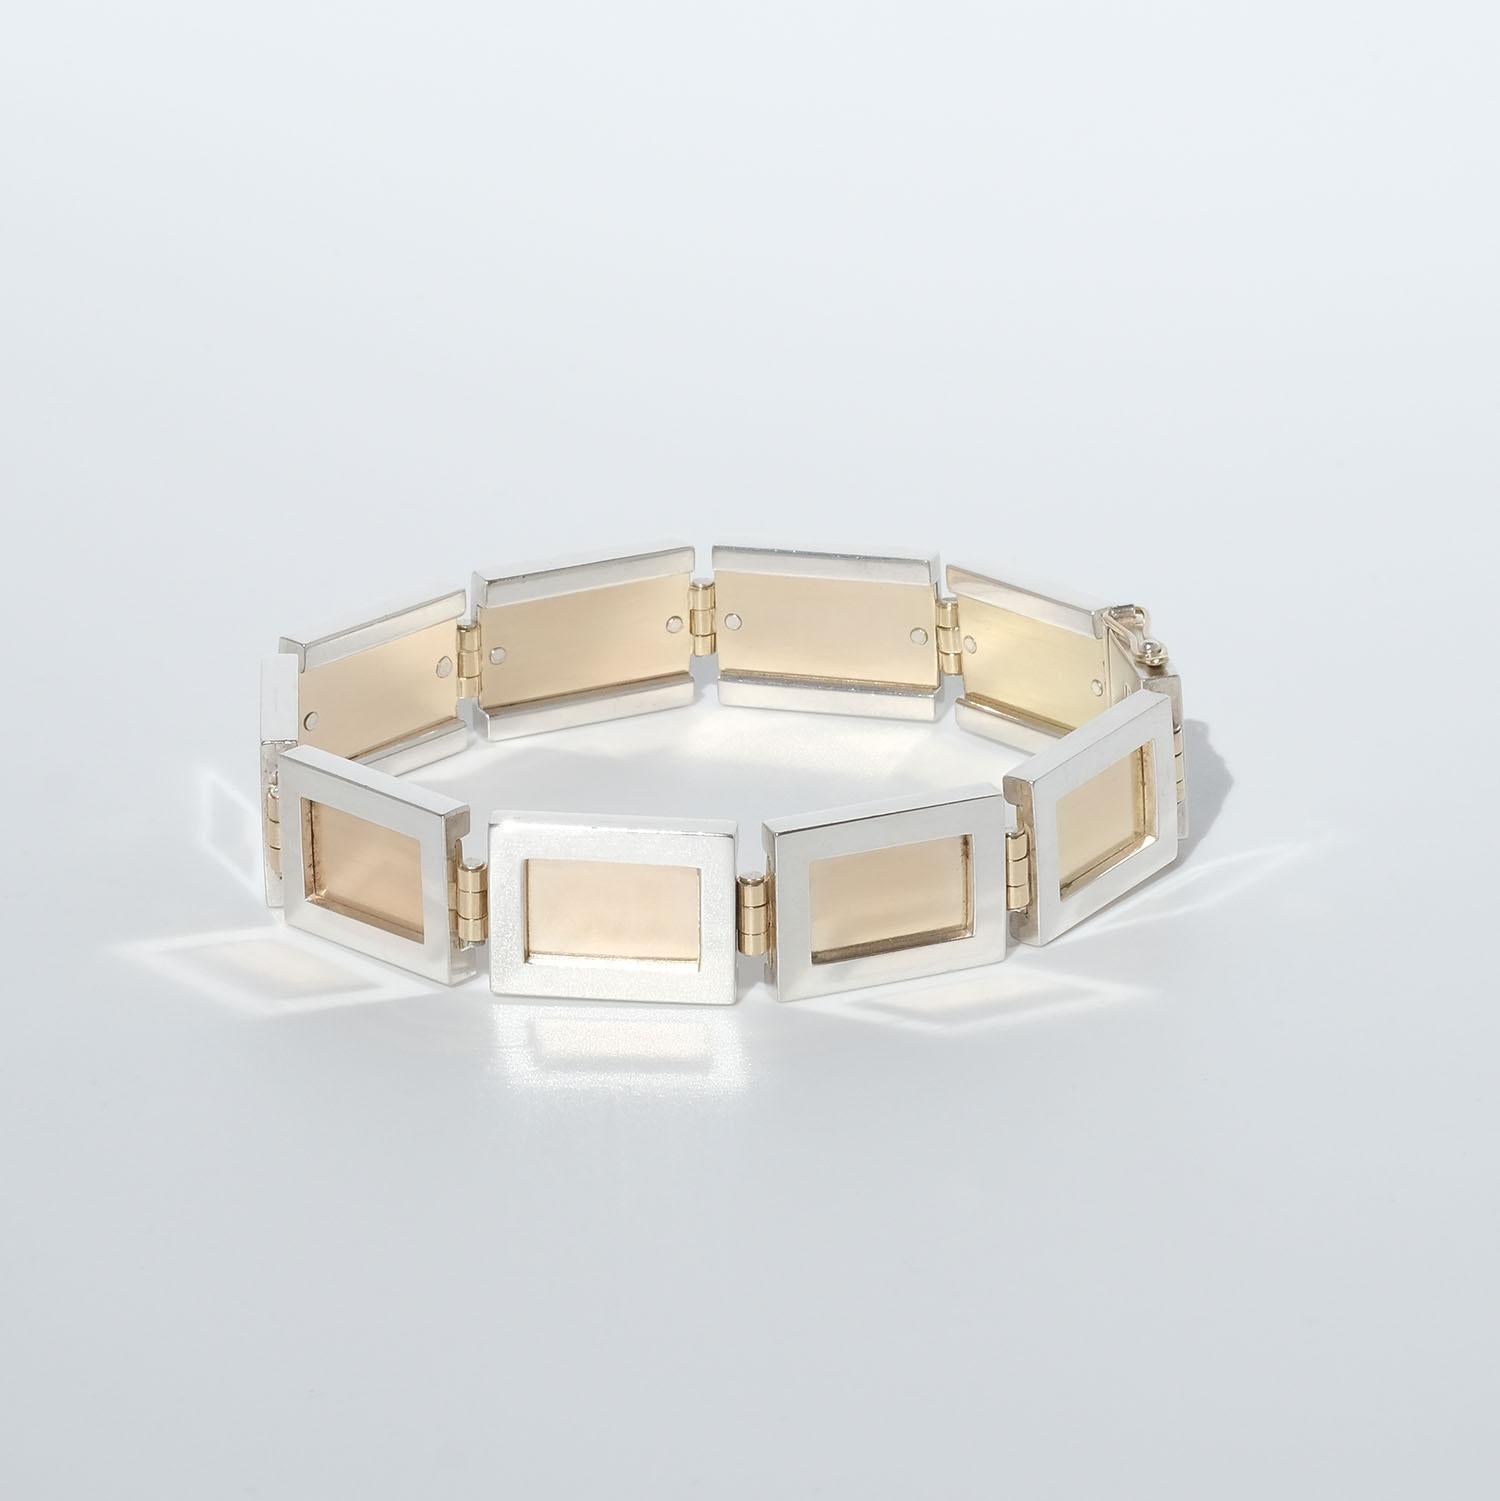 Dieses Armband besteht aus Rechtecken aus 18 Karat Gold und Sterlingsilber, die miteinander verbunden sind. Das Armband lässt sich leicht mit einem Kastenverschluss schließen.

Das Design des Armbands sorgt dafür, dass es schön am Handgelenk seiner